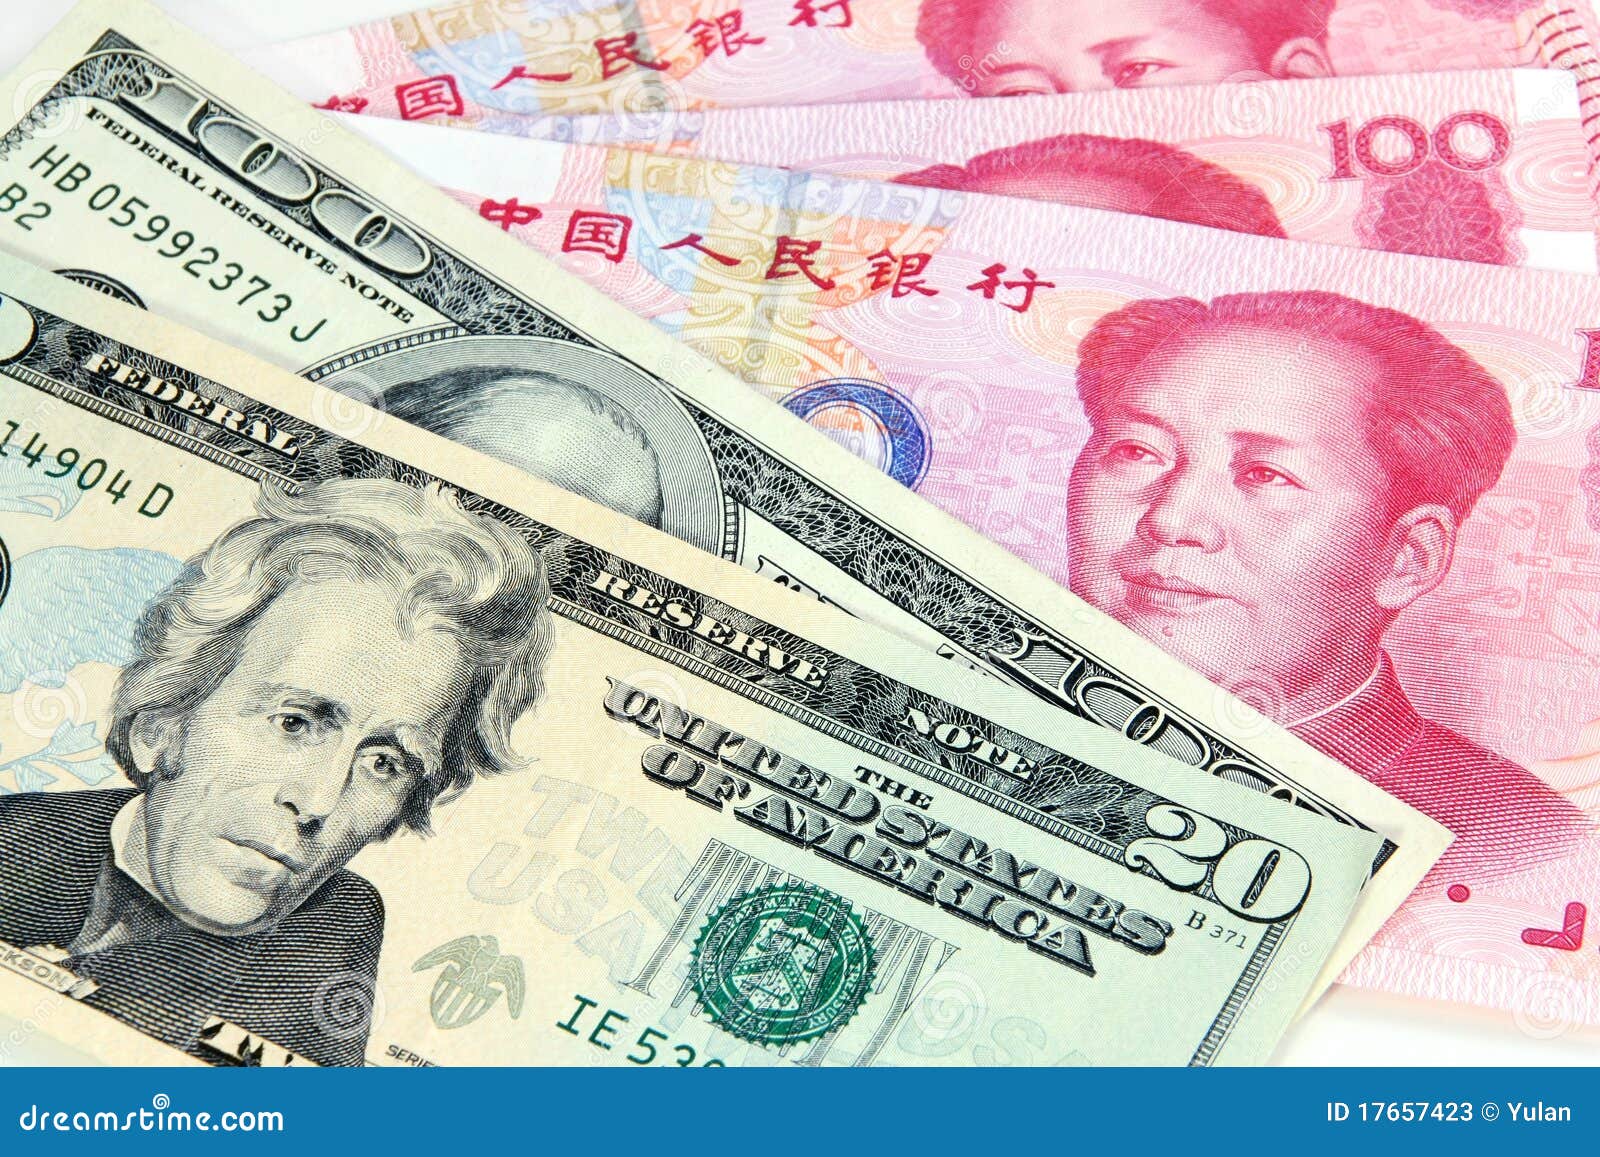 Тысяча долларов в юанях. Юань (валюта). Юань к доллару. Китайские деньги. Китайский доллар.